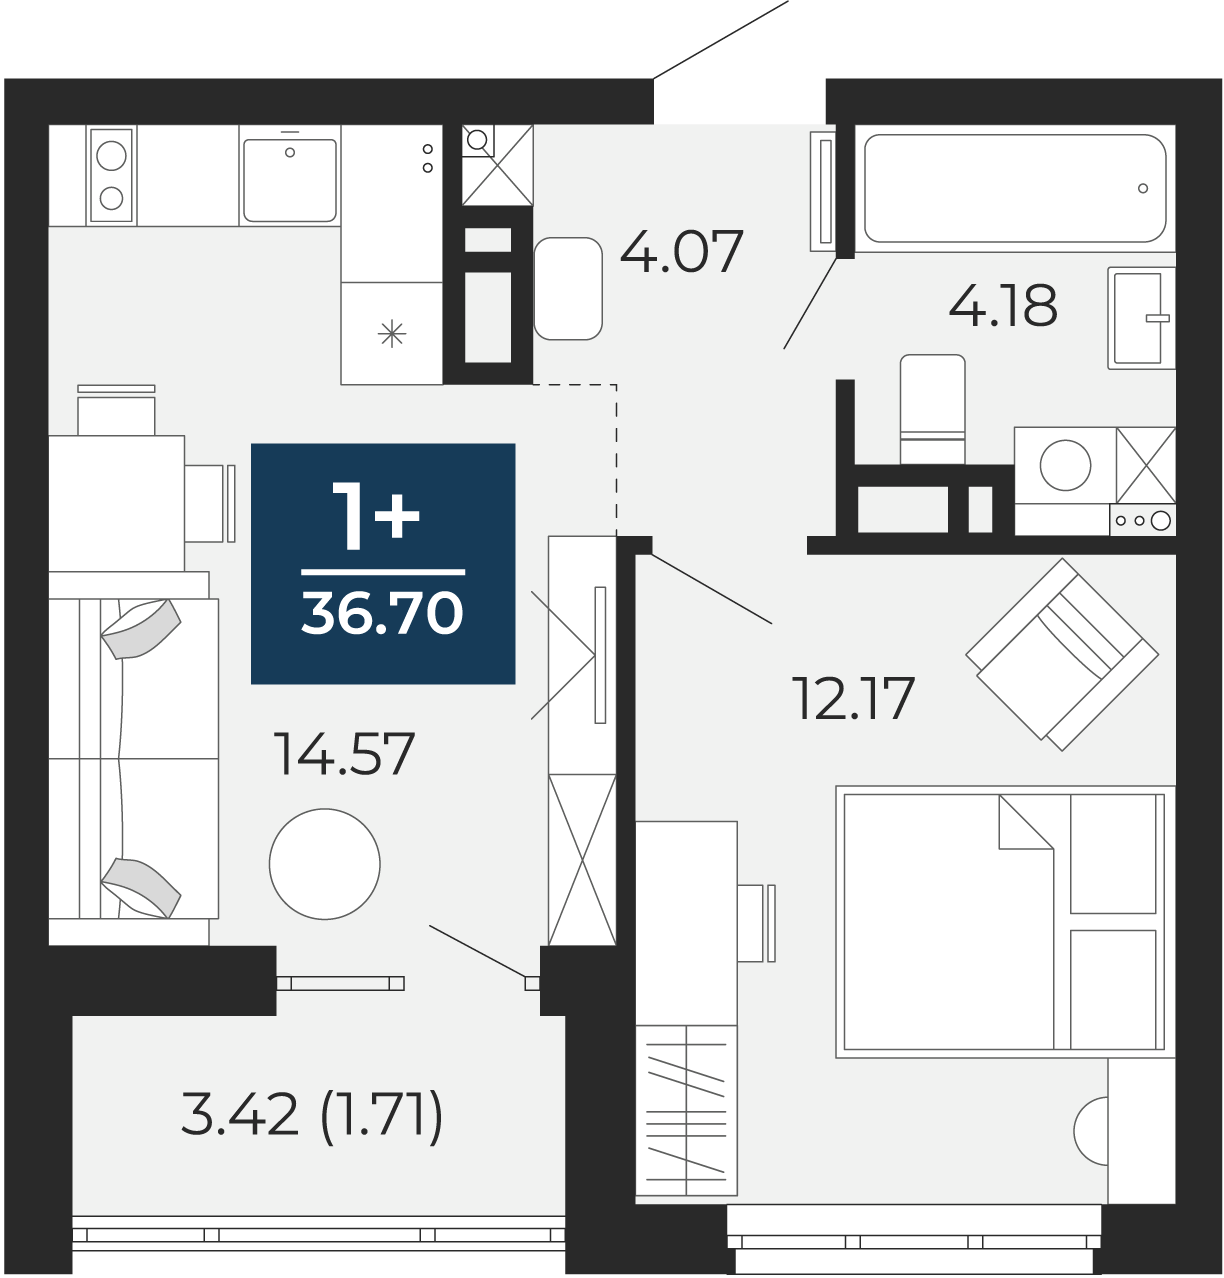 Квартира № 96, 1-комнатная, 36.7 кв. м, 13 этаж